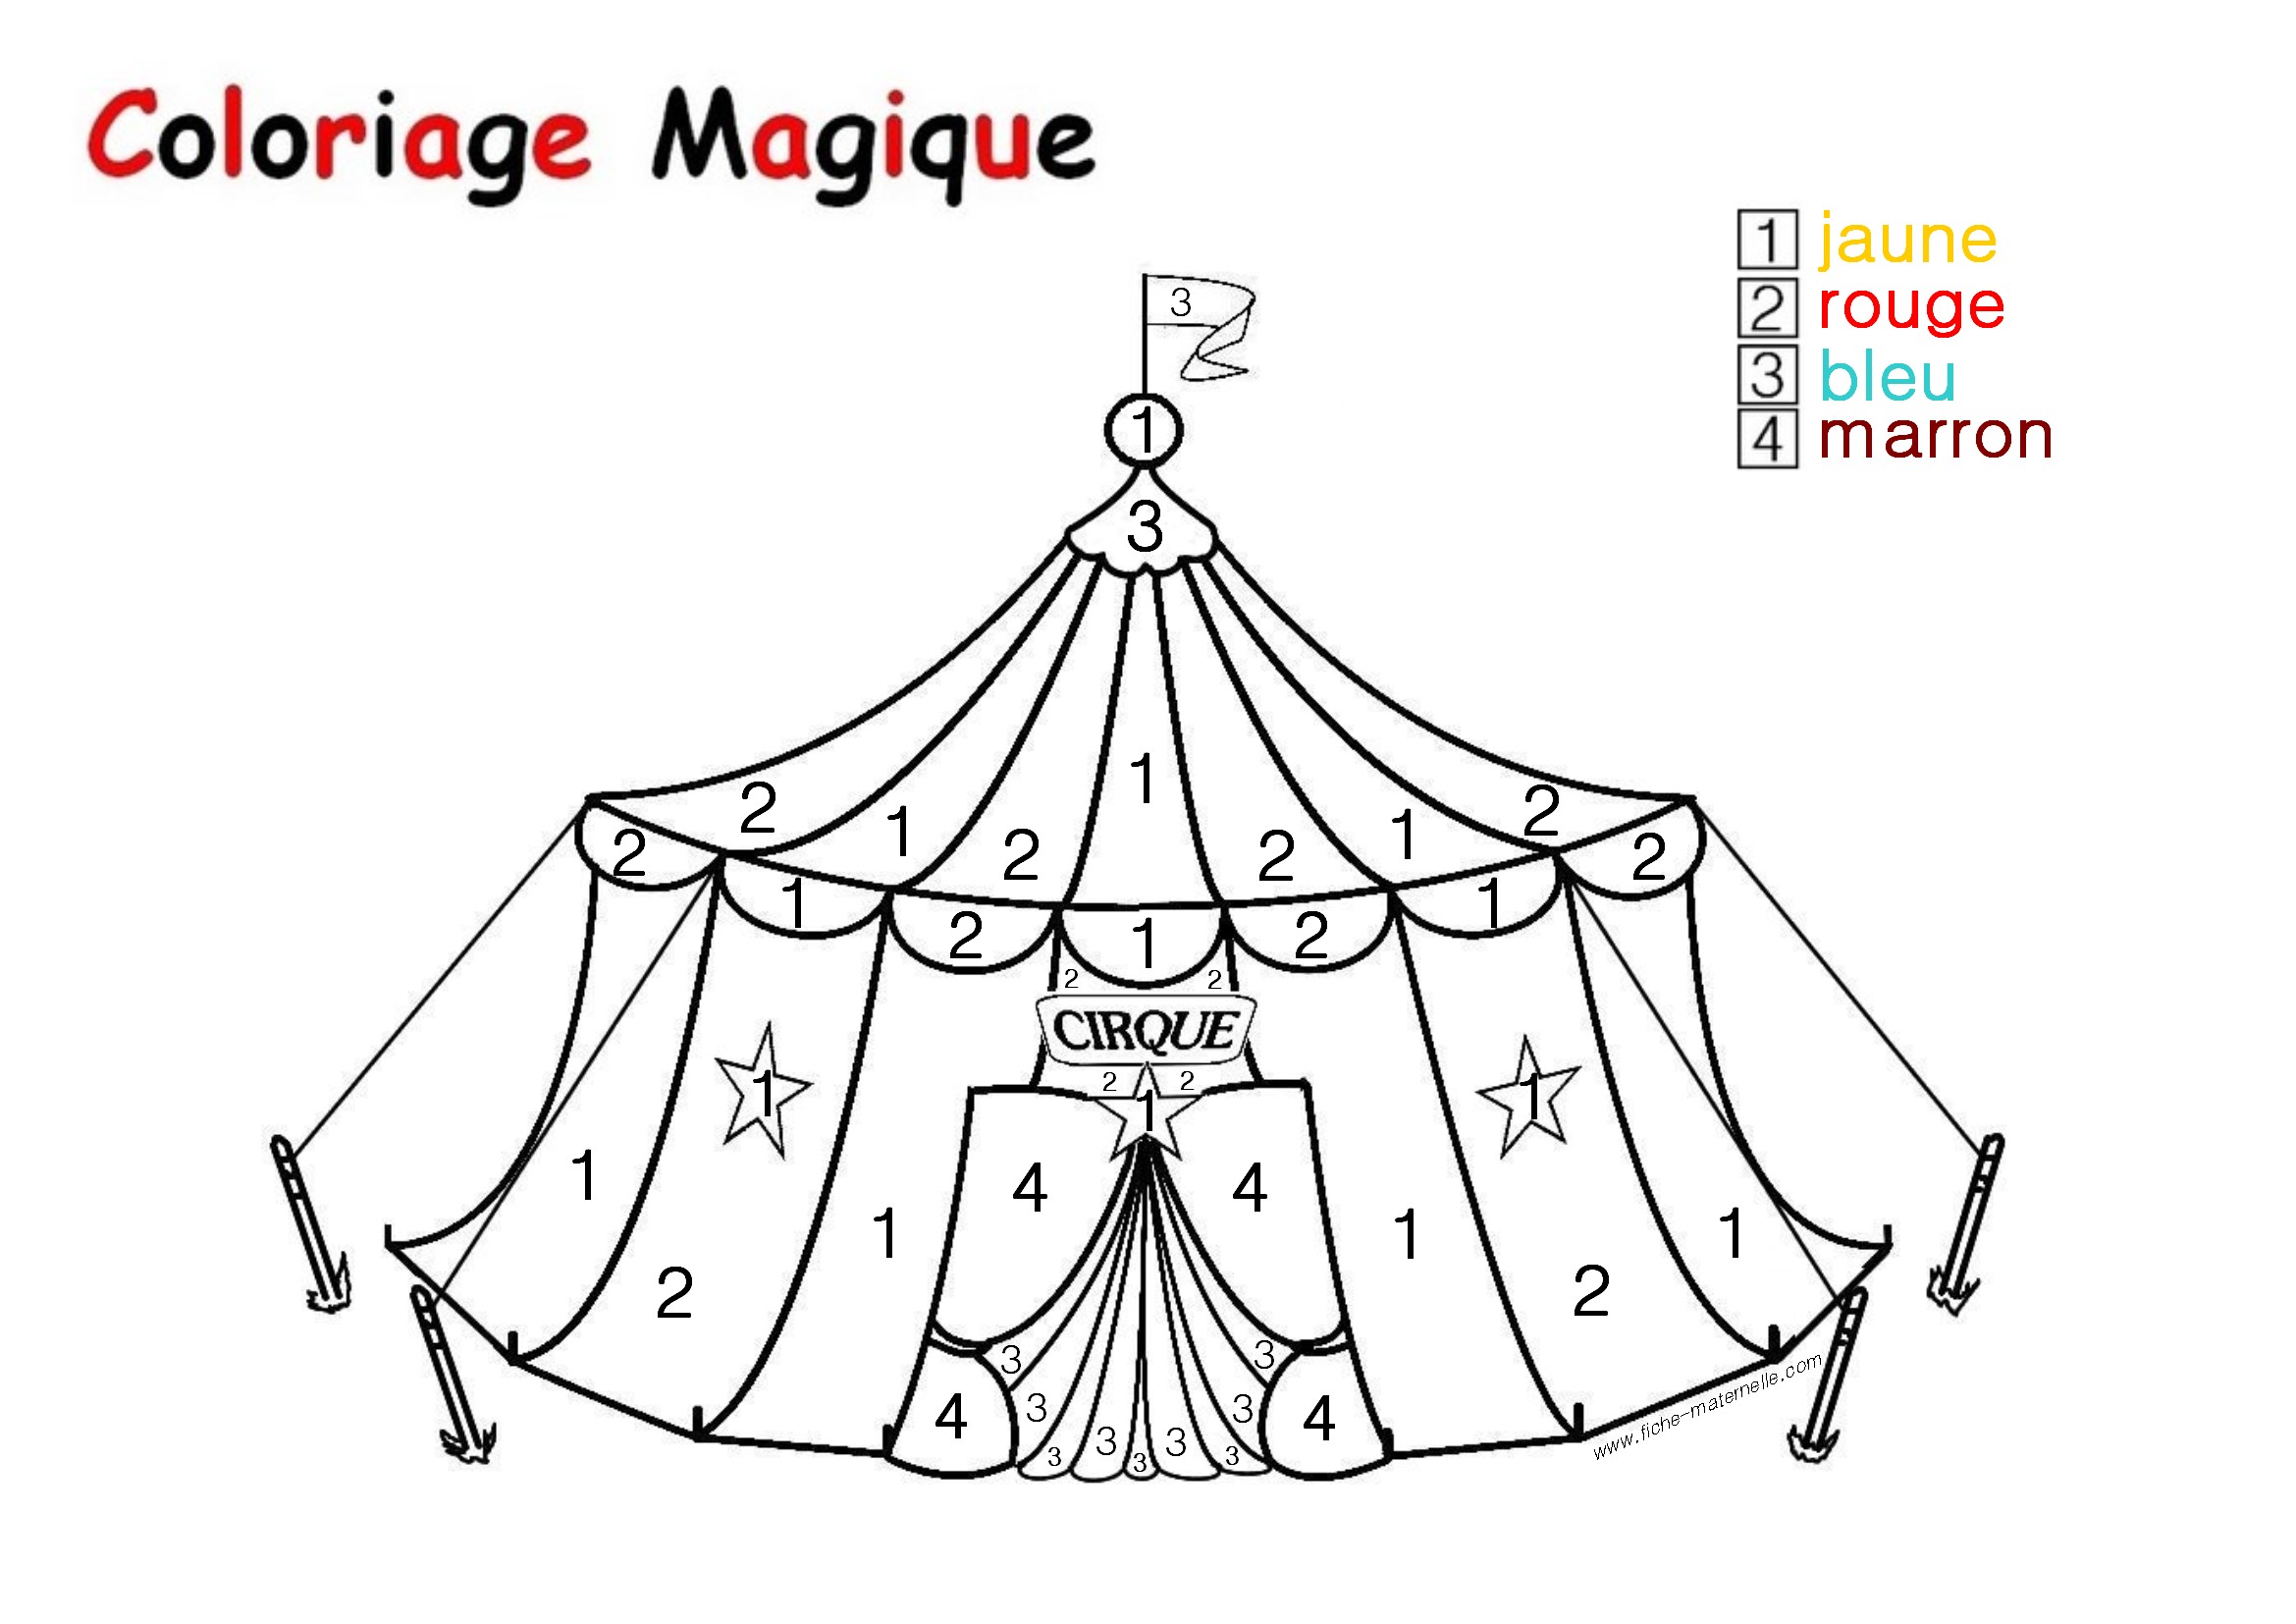 Image #21214 - Coloriage magique gratuit